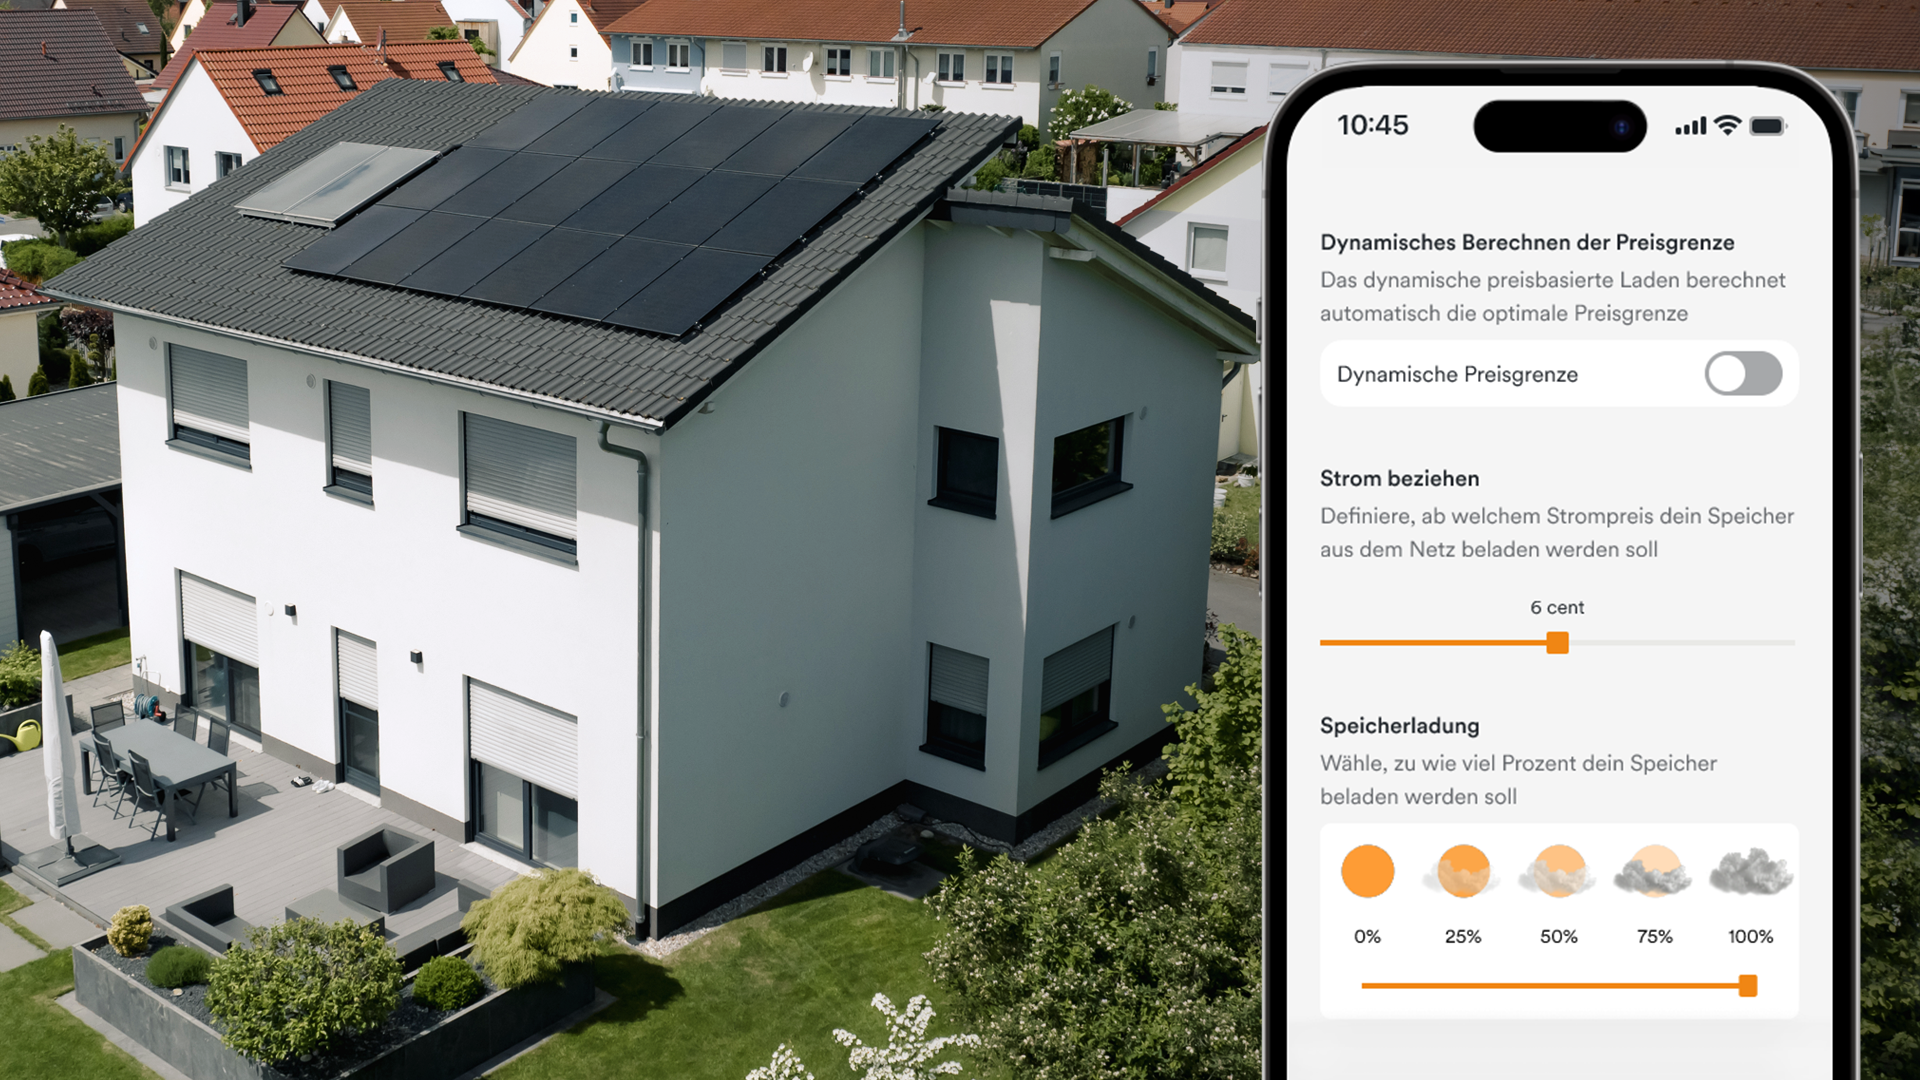 Haus mit Solaranlage auf Dach im Hintergrund, im Vordergrund: Handy-Display mit Solaranlage App AMPERE.IQ mit der Funktion "Dynamisches preisbasiertes Laden"